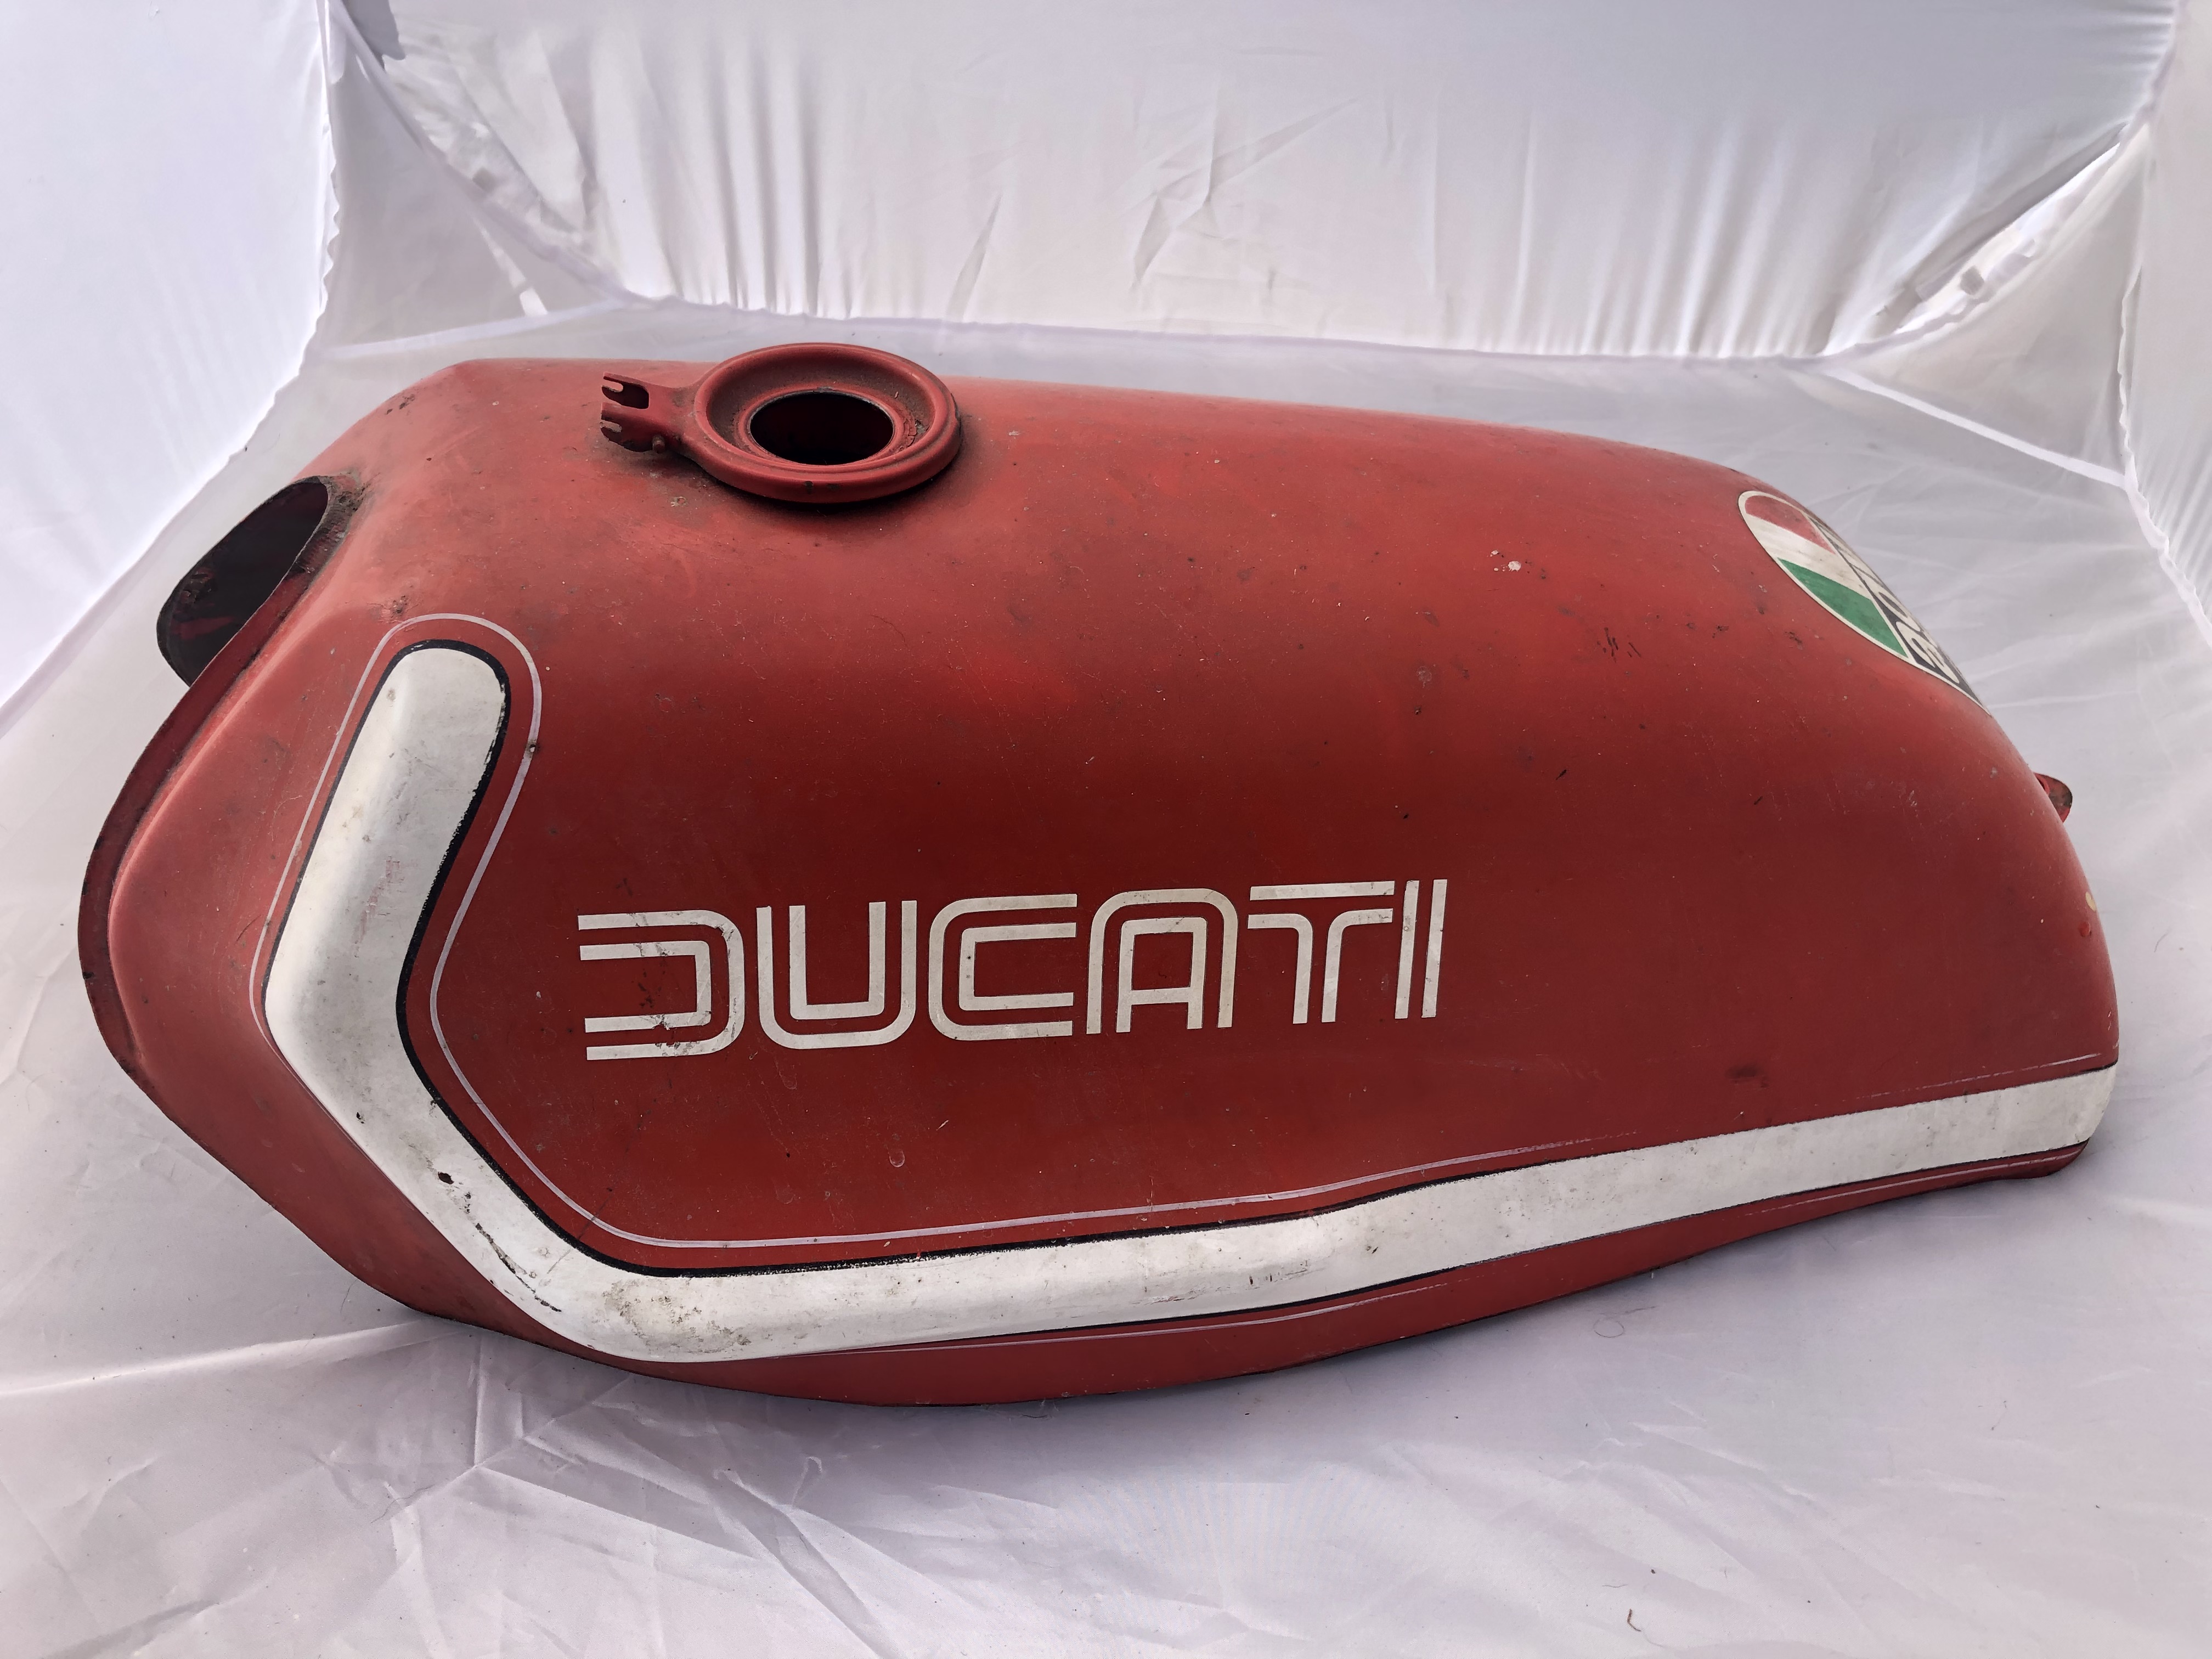 Ducati Parallel Twin Fuel Tank